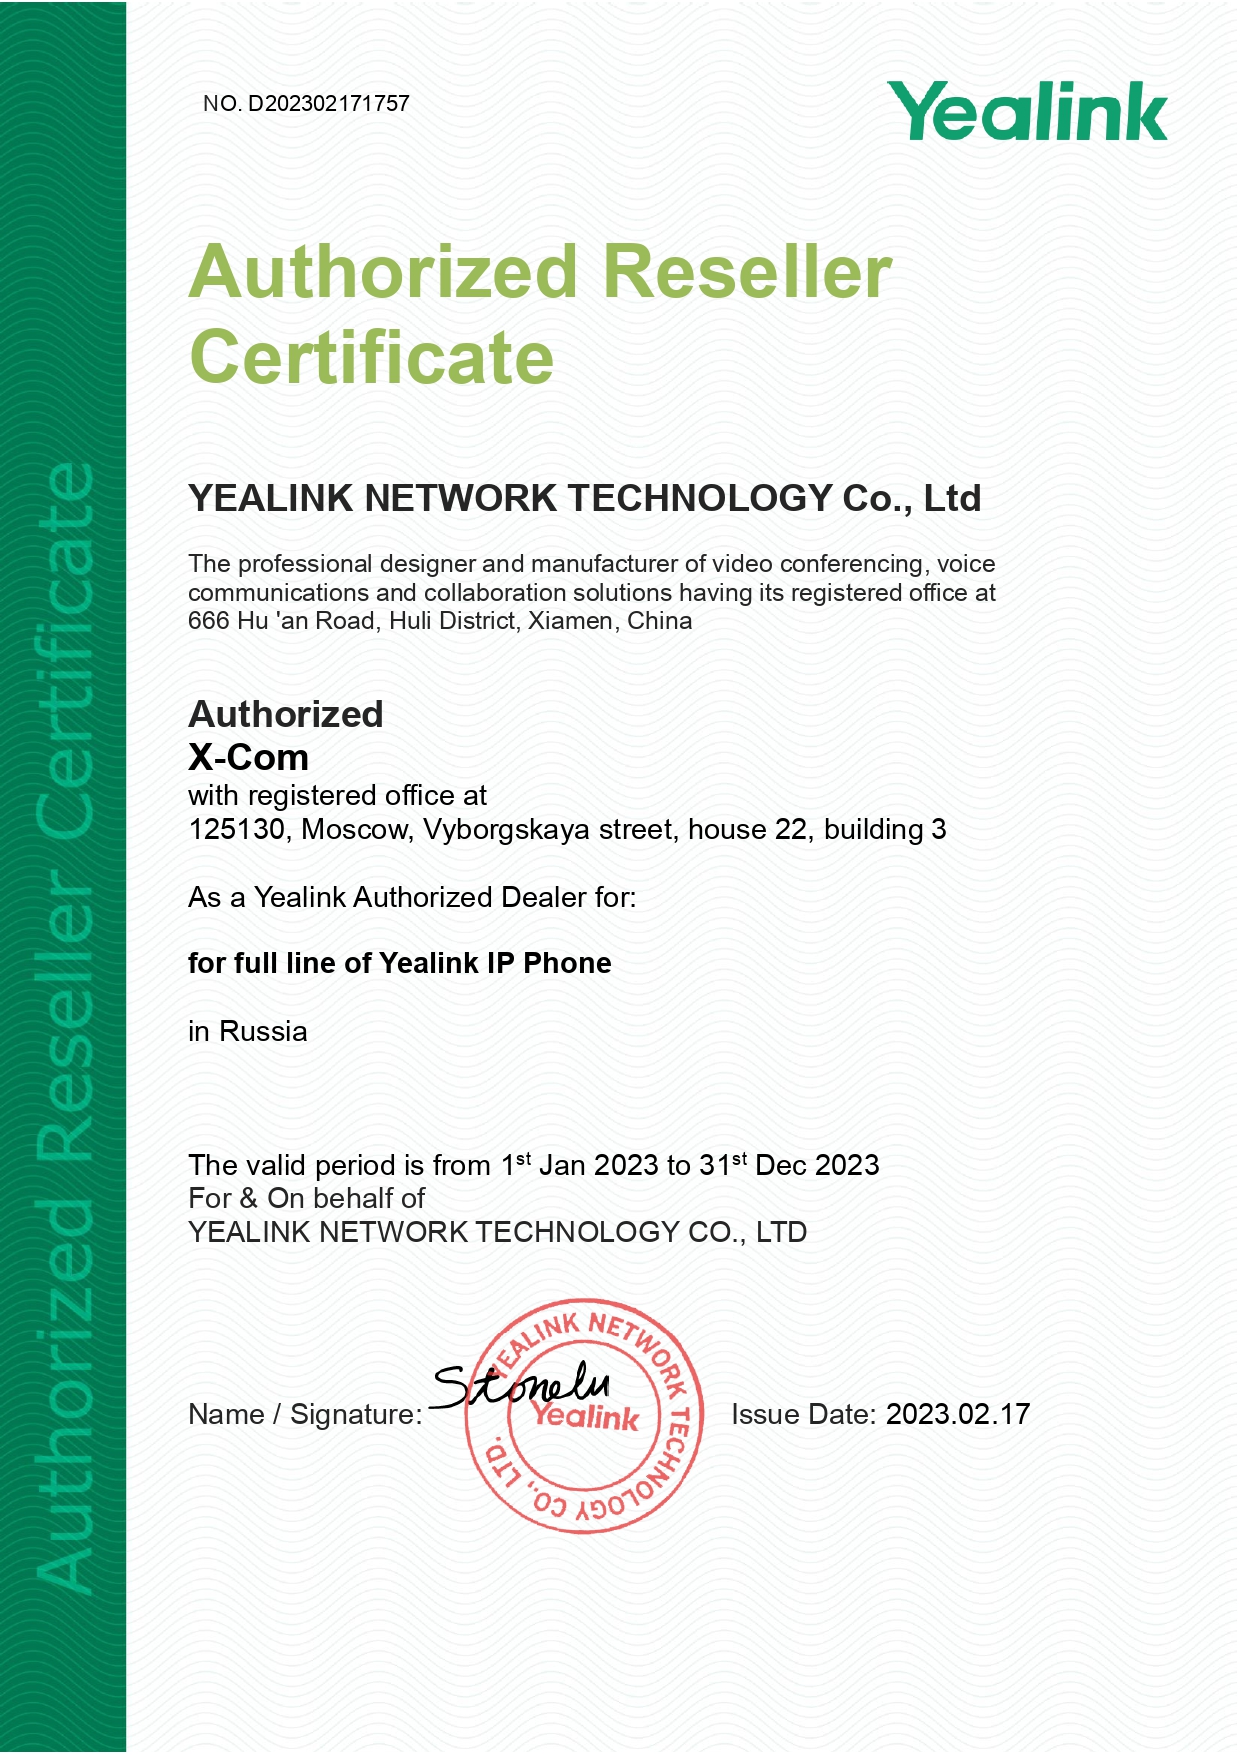 Authorized Reseller партнерской программы Yealink Network Technology в России